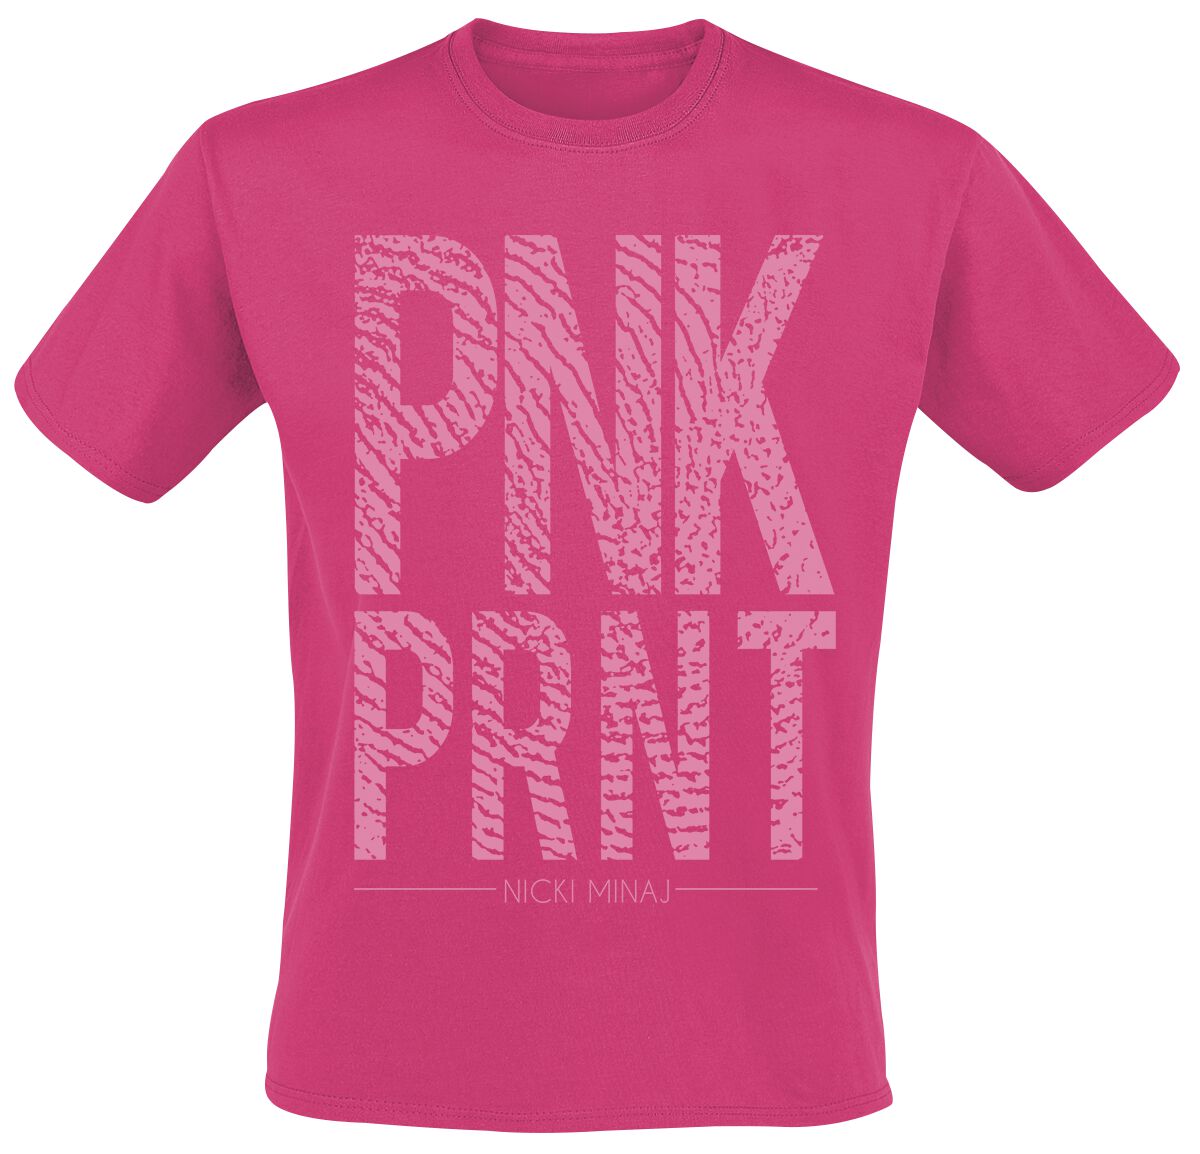 Nicki Minaj T-Shirt - Pnk Prnt - S bis XXL - für Männer - Größe L - pink  - Lizenziertes Merchandise! von Nicki Minaj